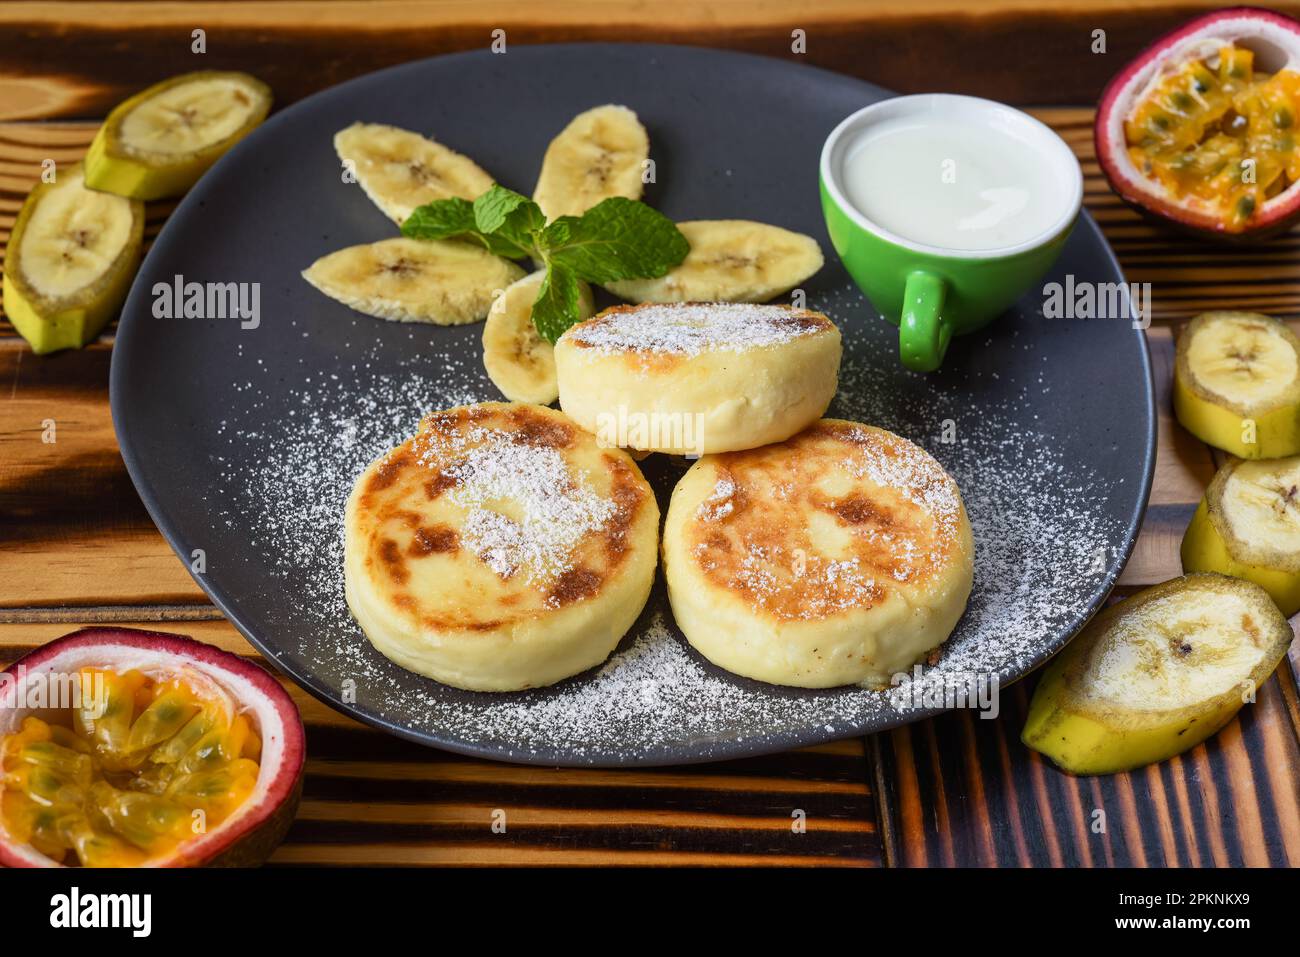 Syrniki o frittelle al formaggio con salsa di panna e banane su un piatto sul tavolo di legno primo piano Foto Stock